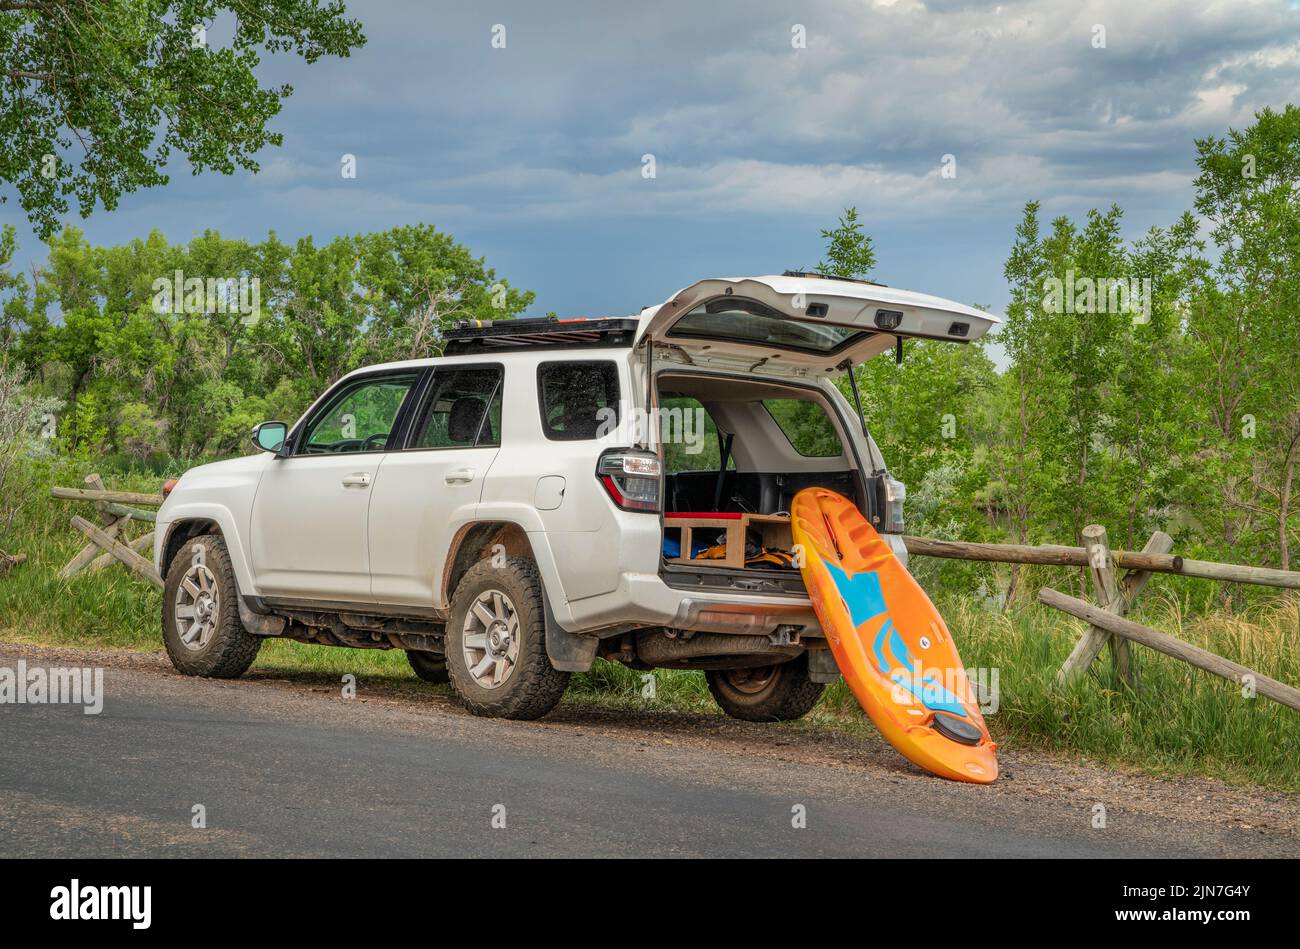 Fort Collins, CO, EE.UU. - 27 de junio de 2022 : Un kayak propenso de Bellyak está siendo cargado en Toyota 4Runner SUV en la orilla de un lago después de una sesión de remo. Foto de stock